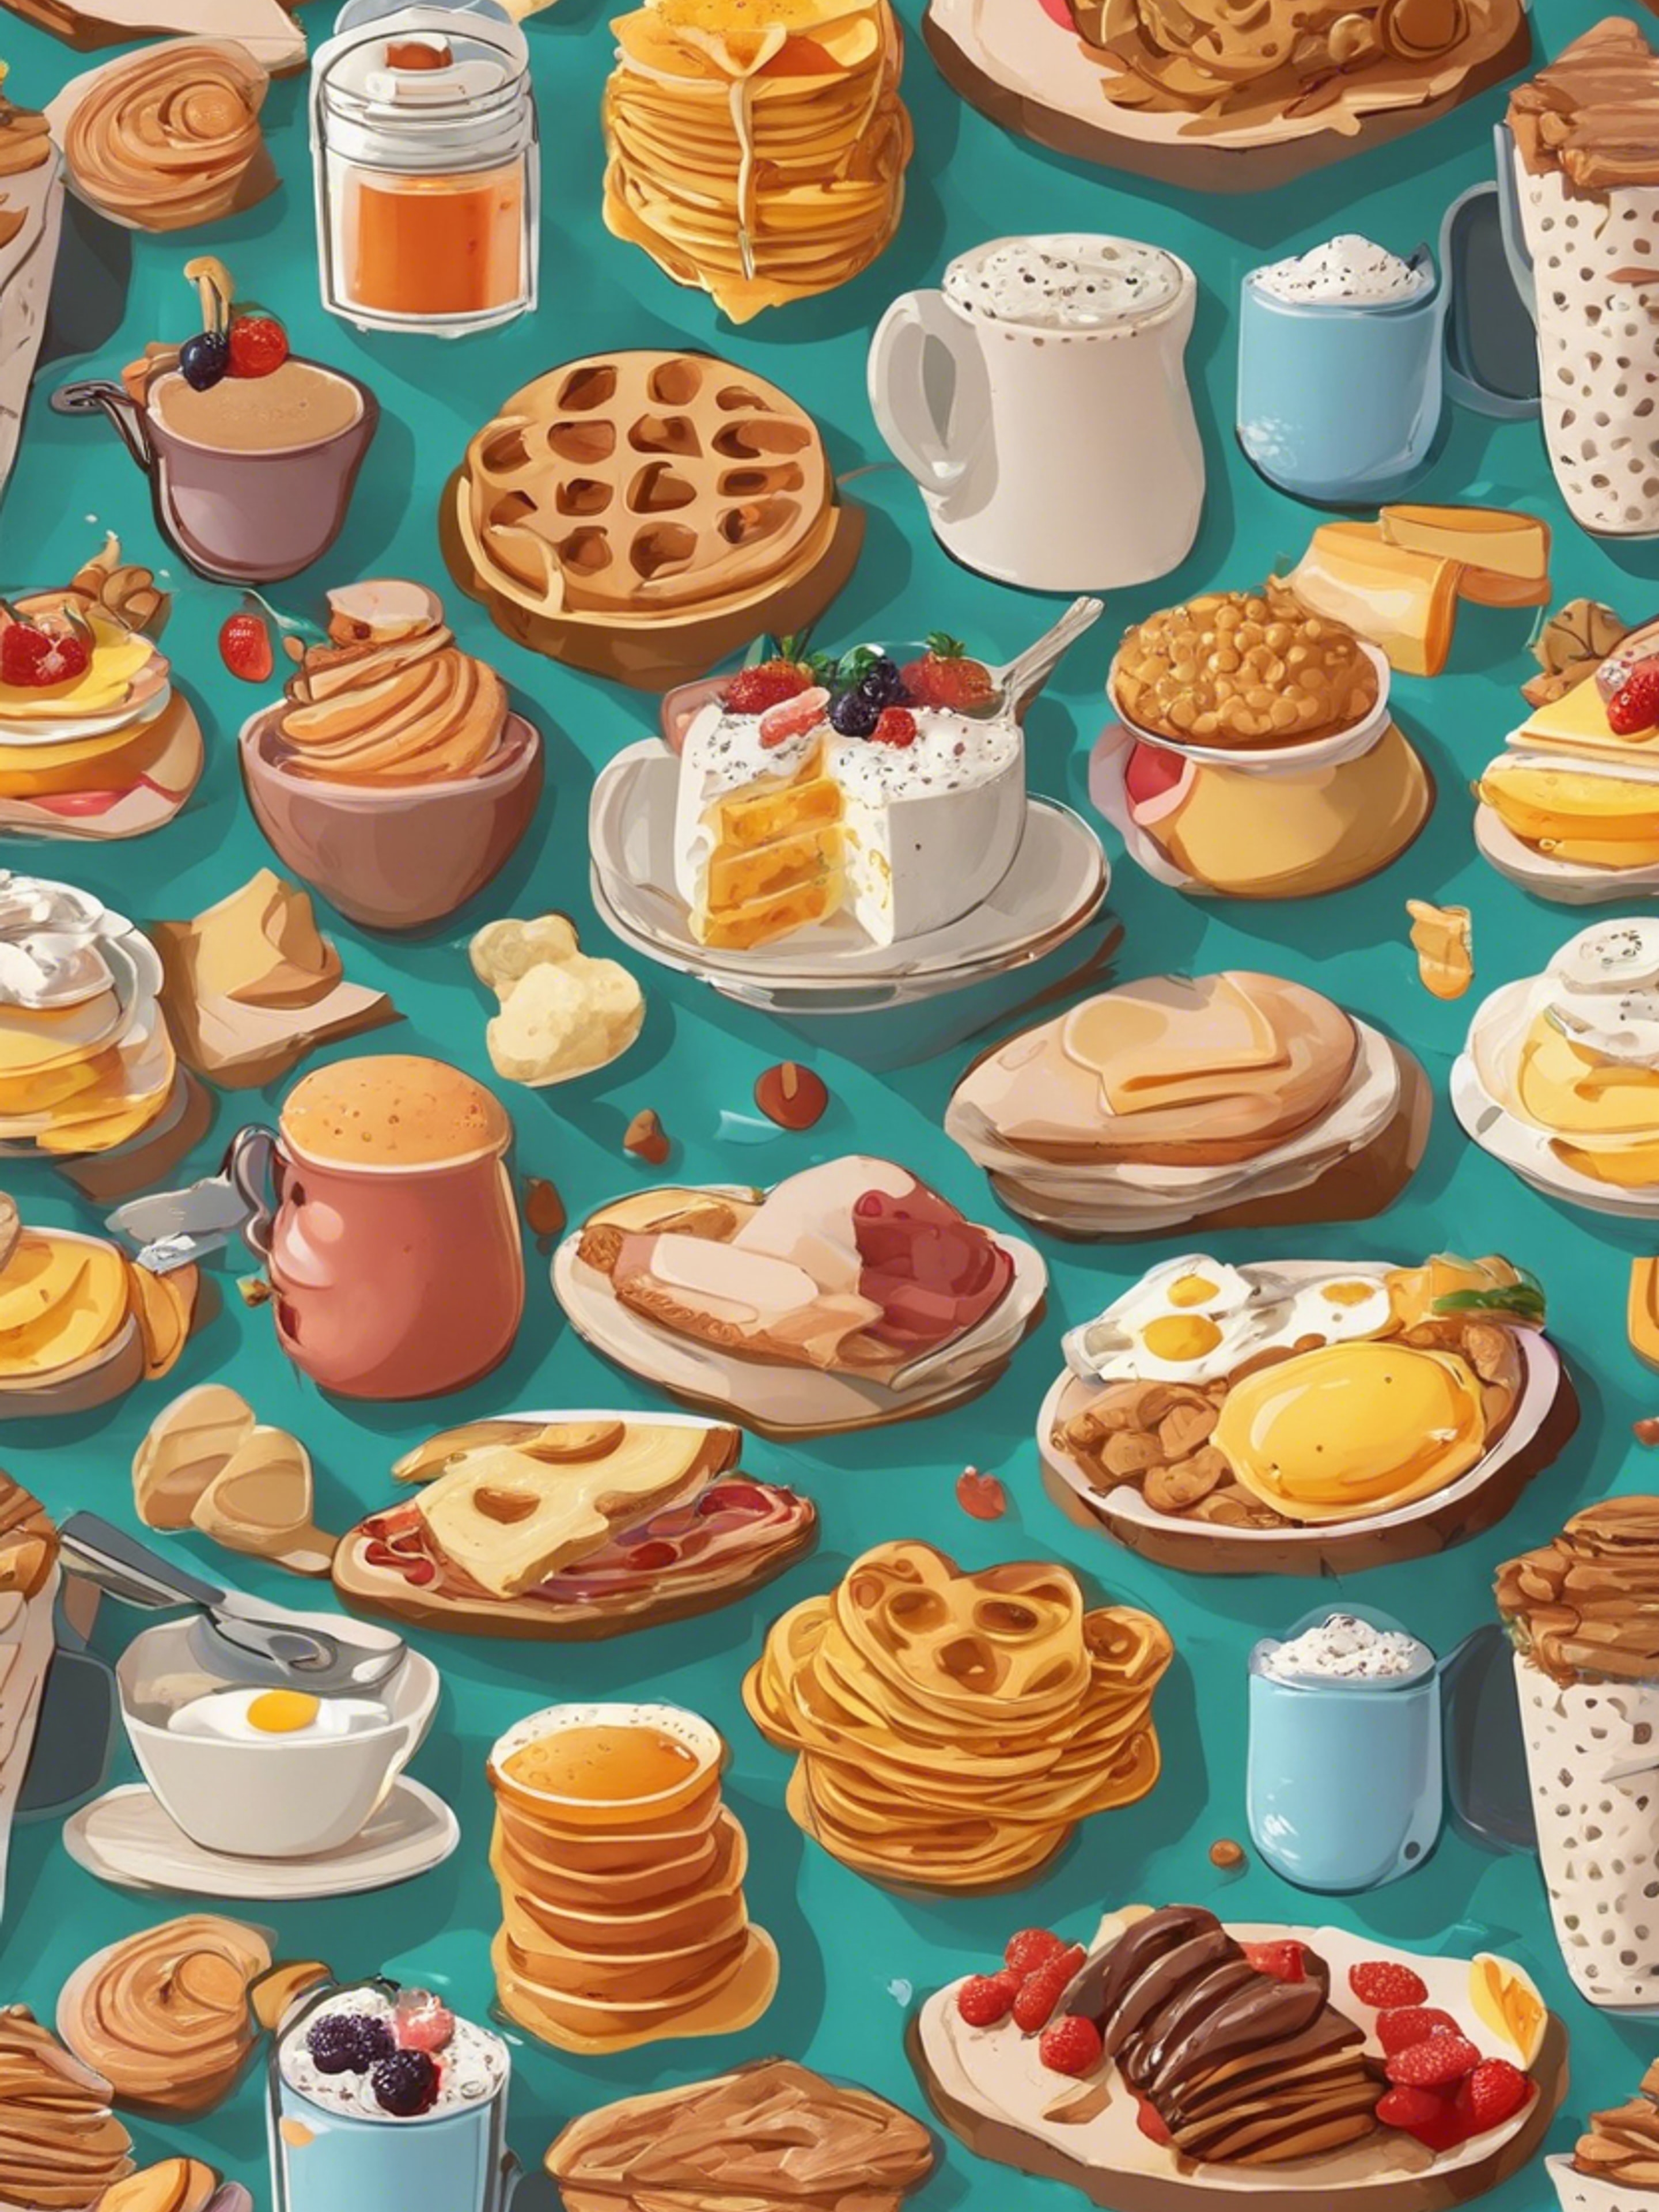 Cartoonish breakfast food items in an appealing, kid-friendly pattern. کاغذ دیواری[fa493d8b255444e69f8d]